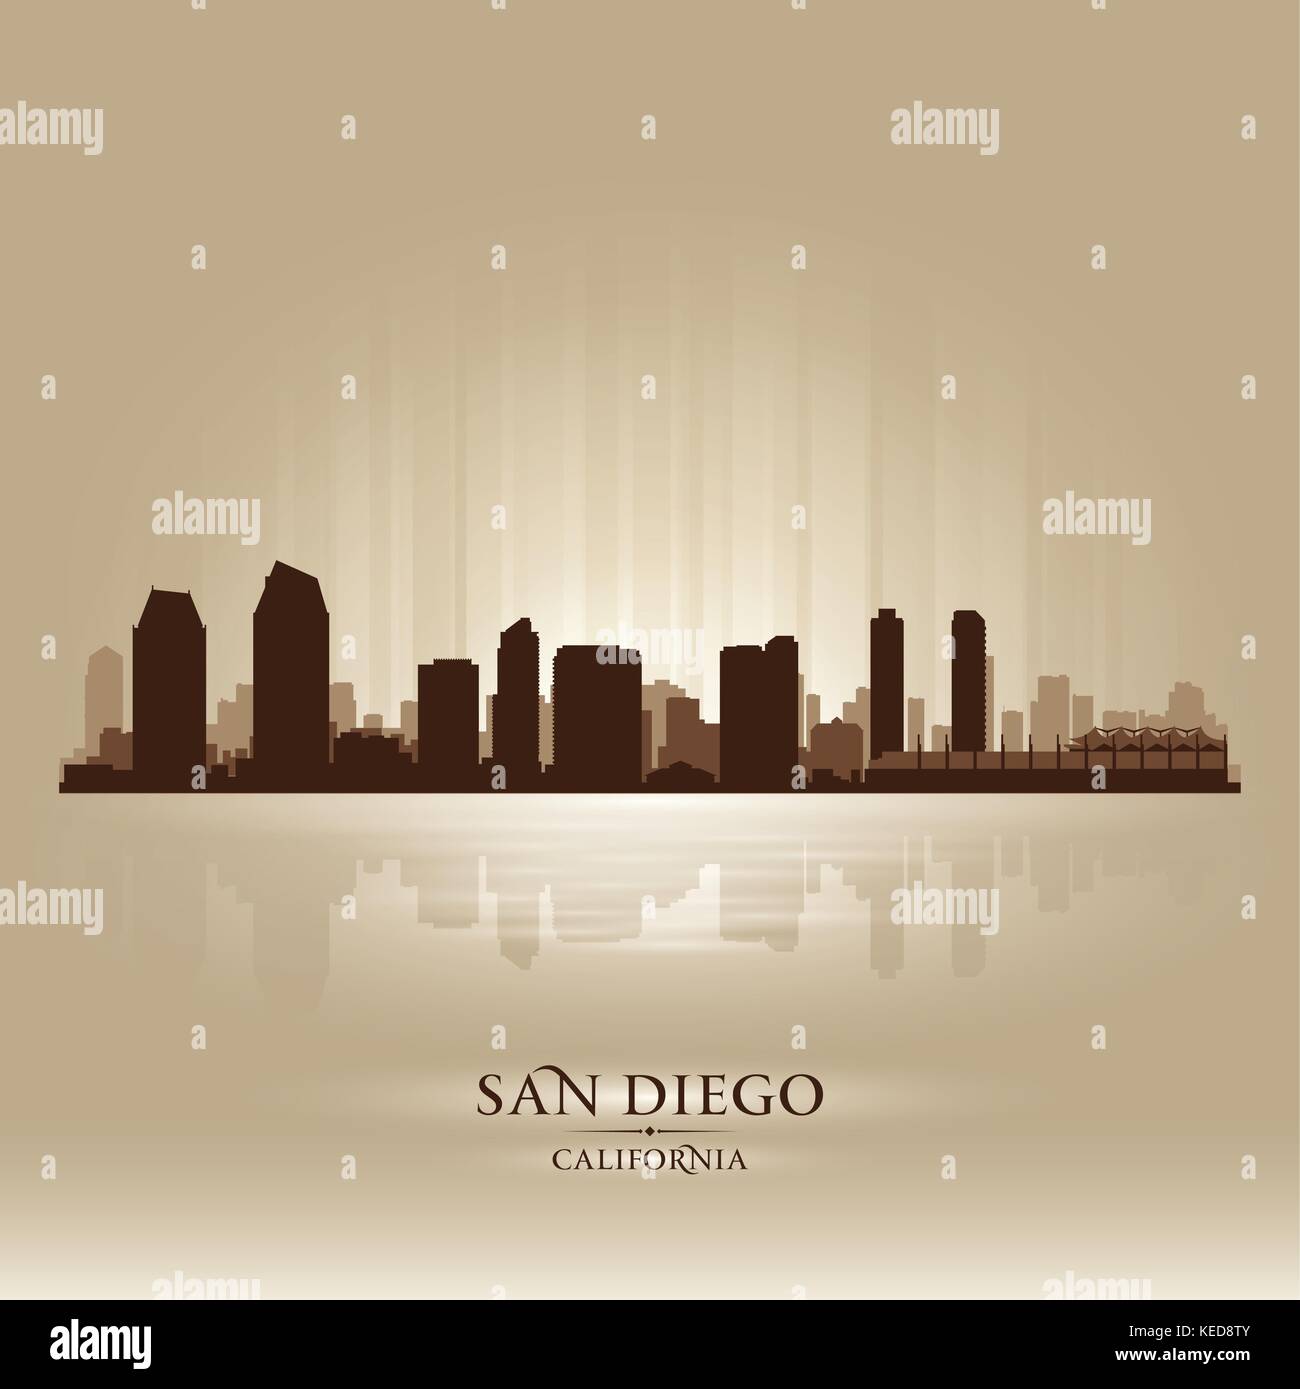 San Diego California skyline city silhouette Stock Vector